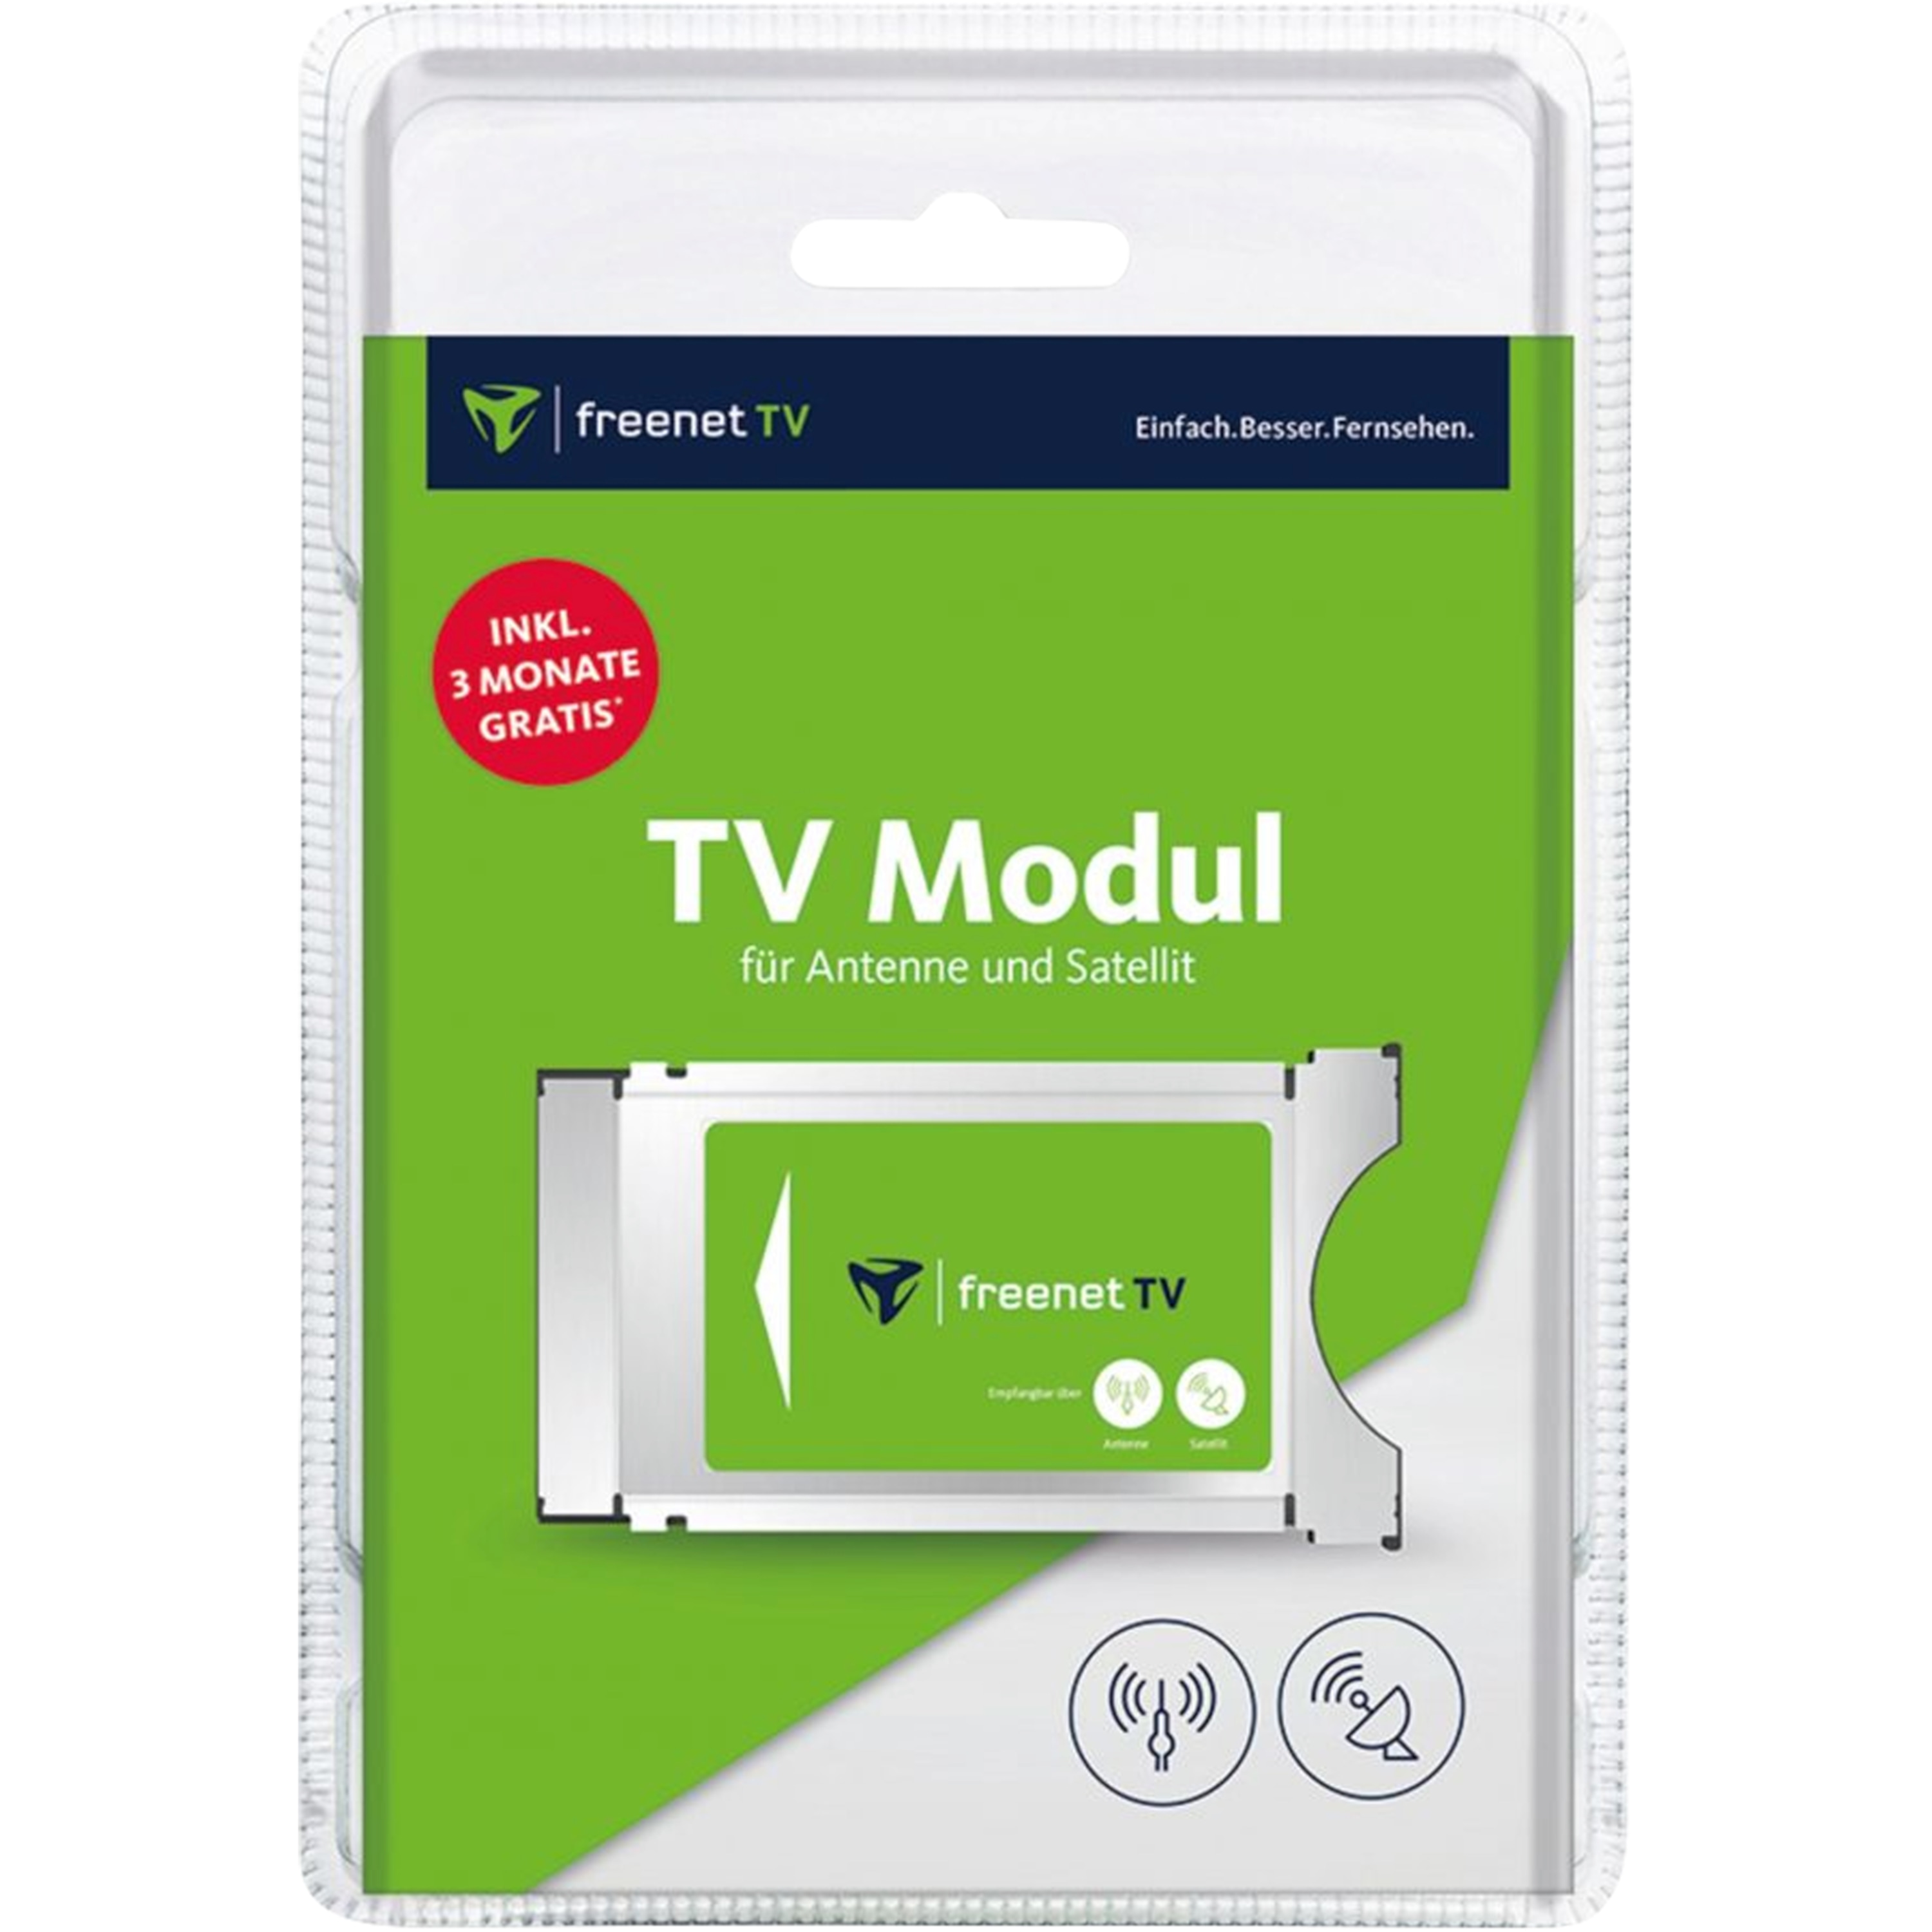 MEDION® LIFE® X15000 Smart-TV, 125,7 cm (50'') Ultra HD Fernseher, inkl. DVB-T 2 HD Modul (3 Monate freenet TV gratis) - ARTIKELSET